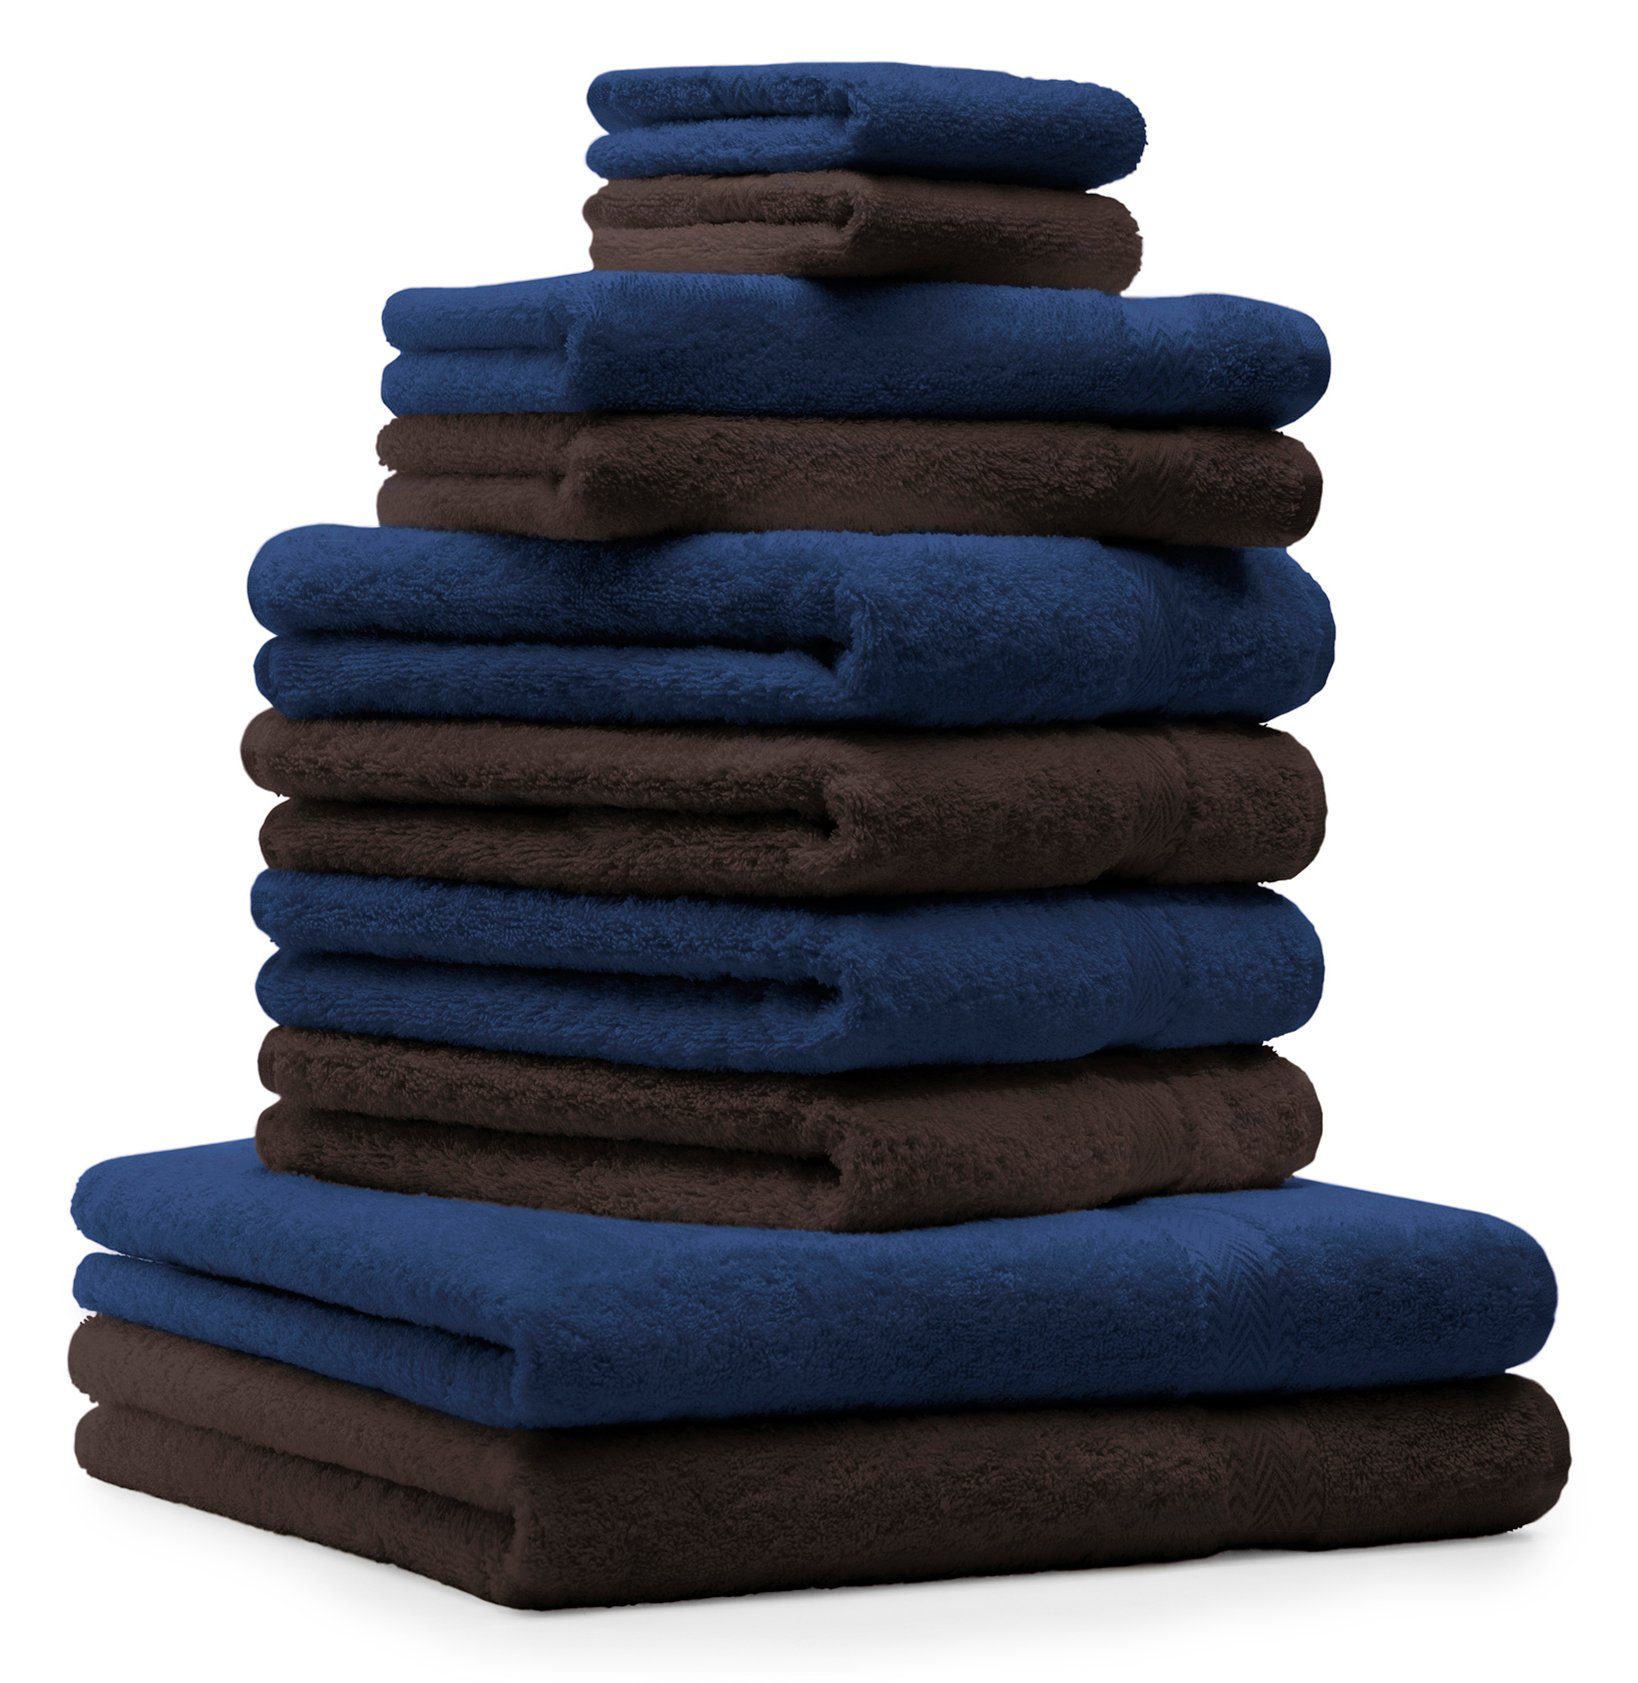 Betz Handtuch Set 10-TLG. Handtücher-Set Classic Farbe dunkelblau und Dunkelbraun, 100% Baumwolle | Handtuch-Sets